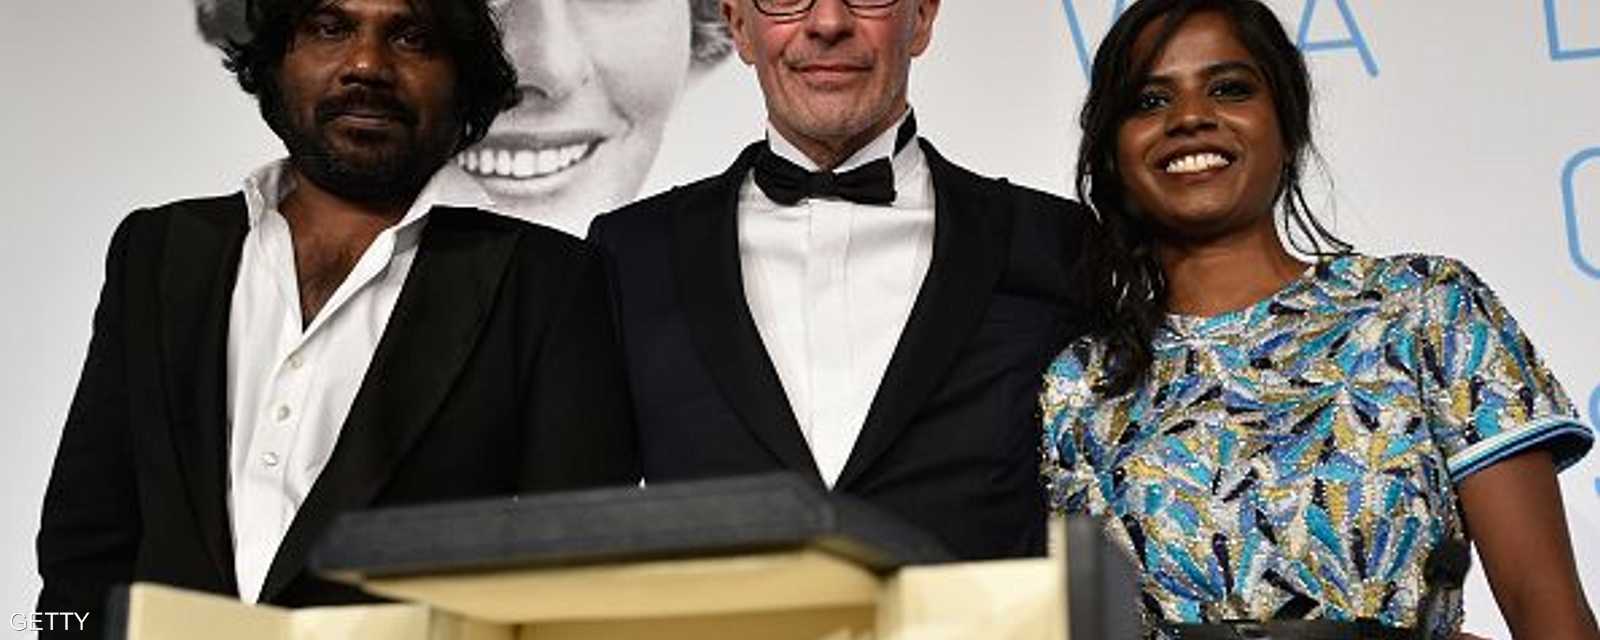 المخرج الفرنسي جاك أوديارد مع أبطال فيلمه الفائز بالسعفة الذهبية